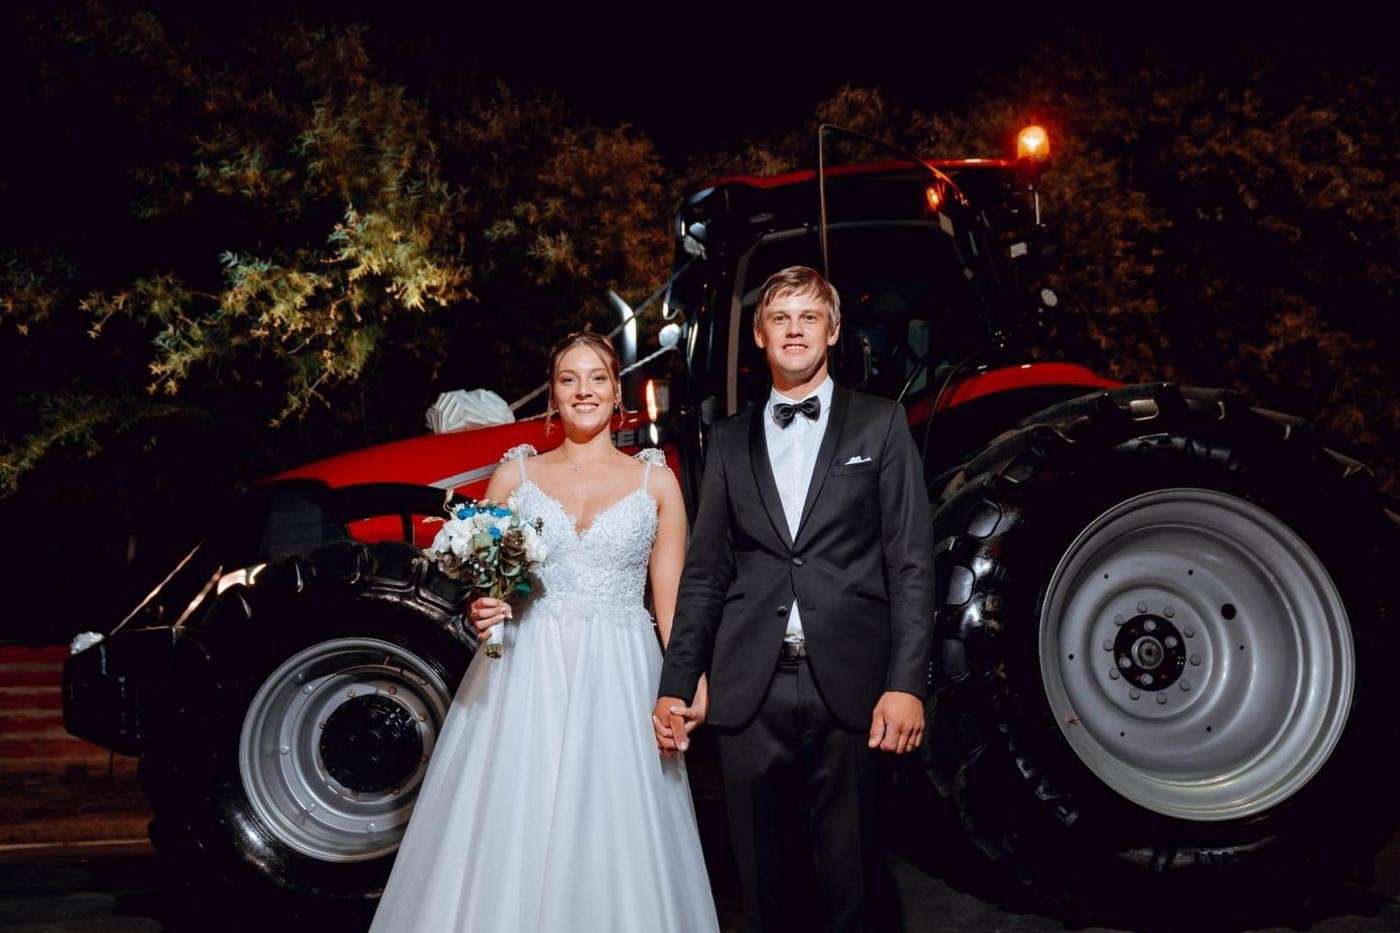 Una pareja entrerriana llegó a la iglesia a dar el “sí” en un tractor Case